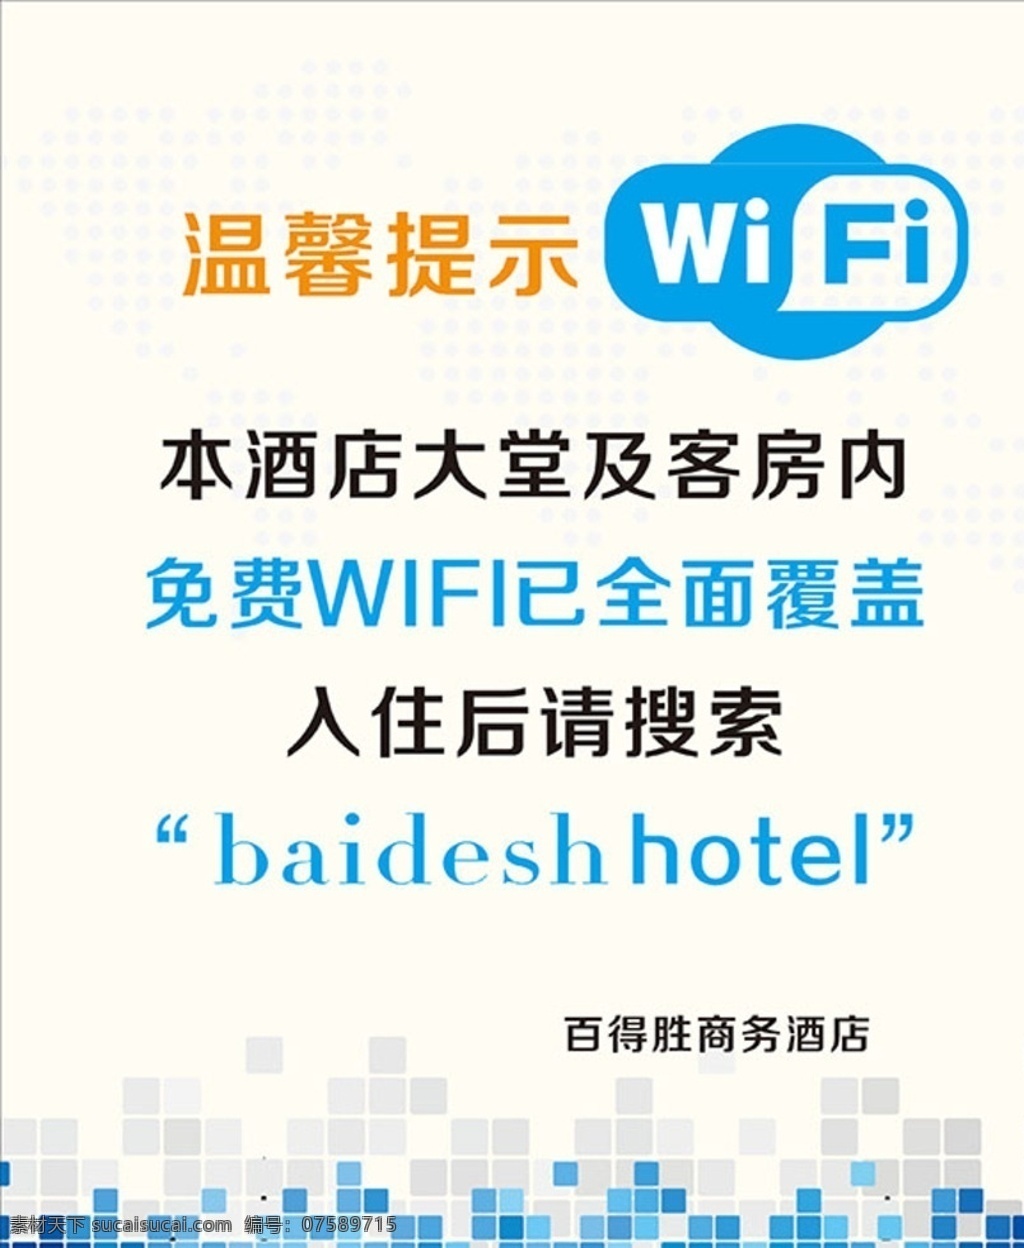 wifi海报 酒店wifi 餐厅wifi 温馨提示 wifi覆盖 免费wifi wifi 提示 海报 wifi密码